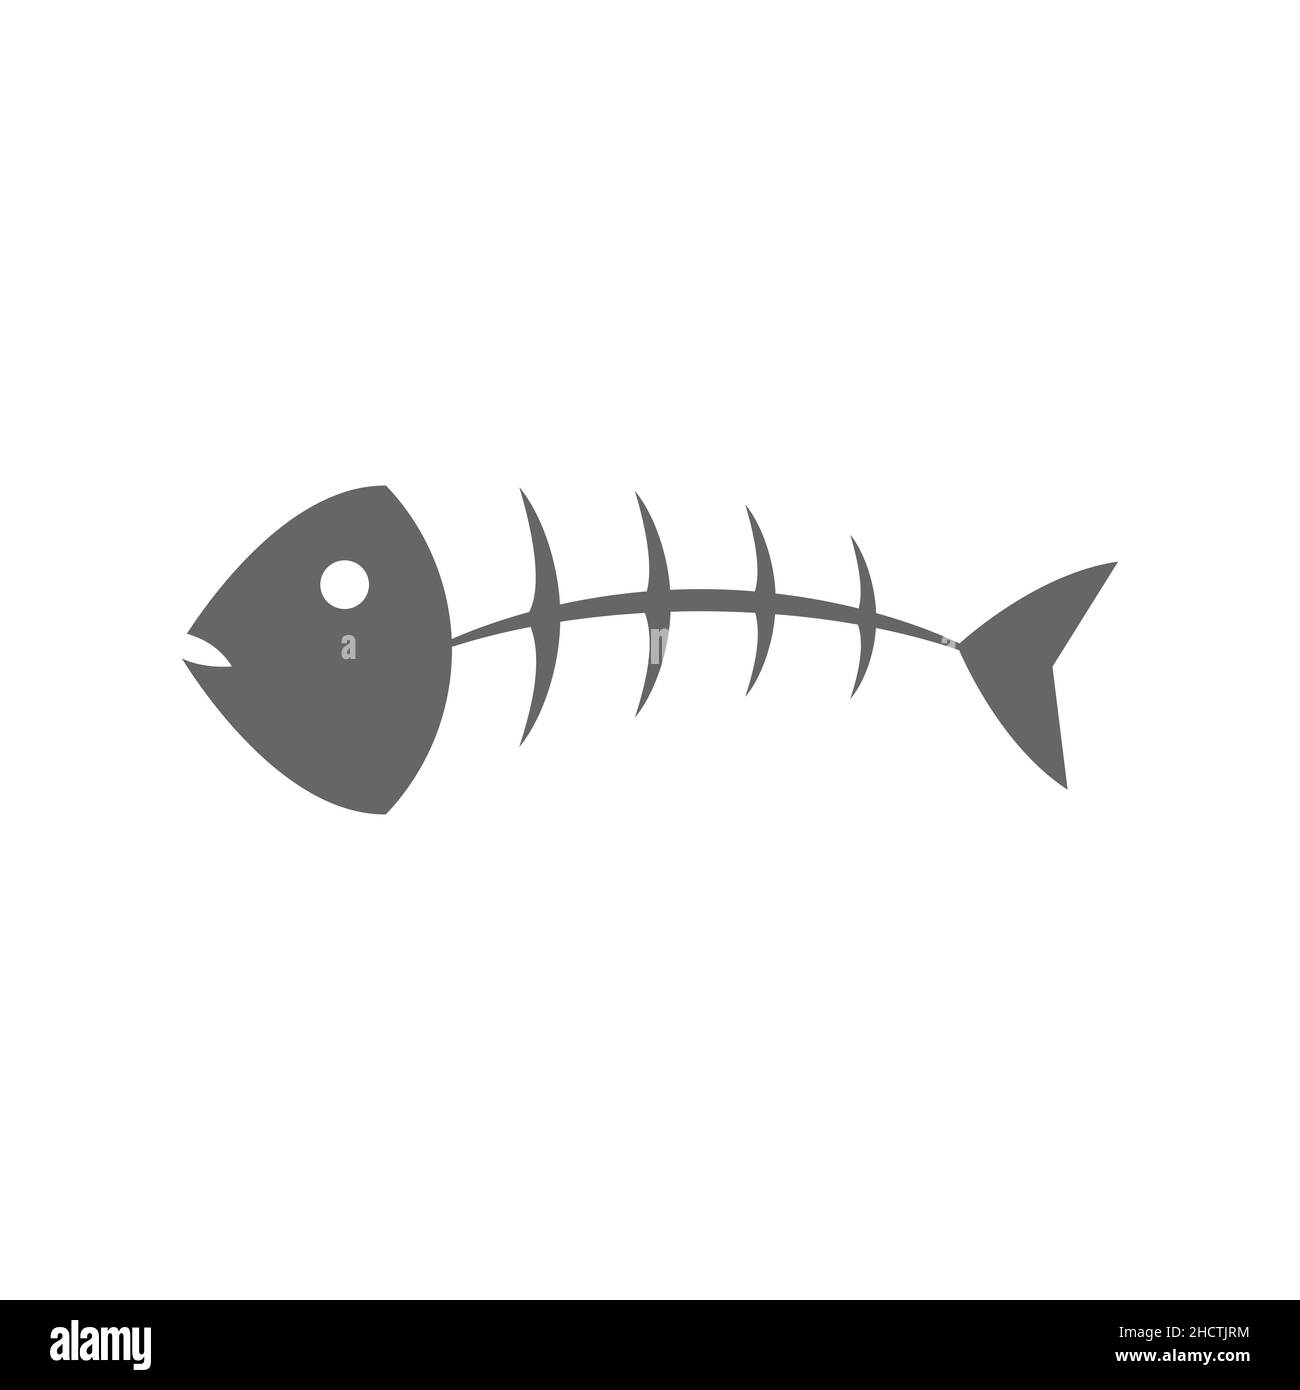 Fischknochen auf weißem Hintergrund. Graues Fischgrätsymbol, Symbol oder Zeichen. Fischskelett. Dead Fish-Konzept. Umweltschutz in der Tierwelt. Vektor Stock Vektor